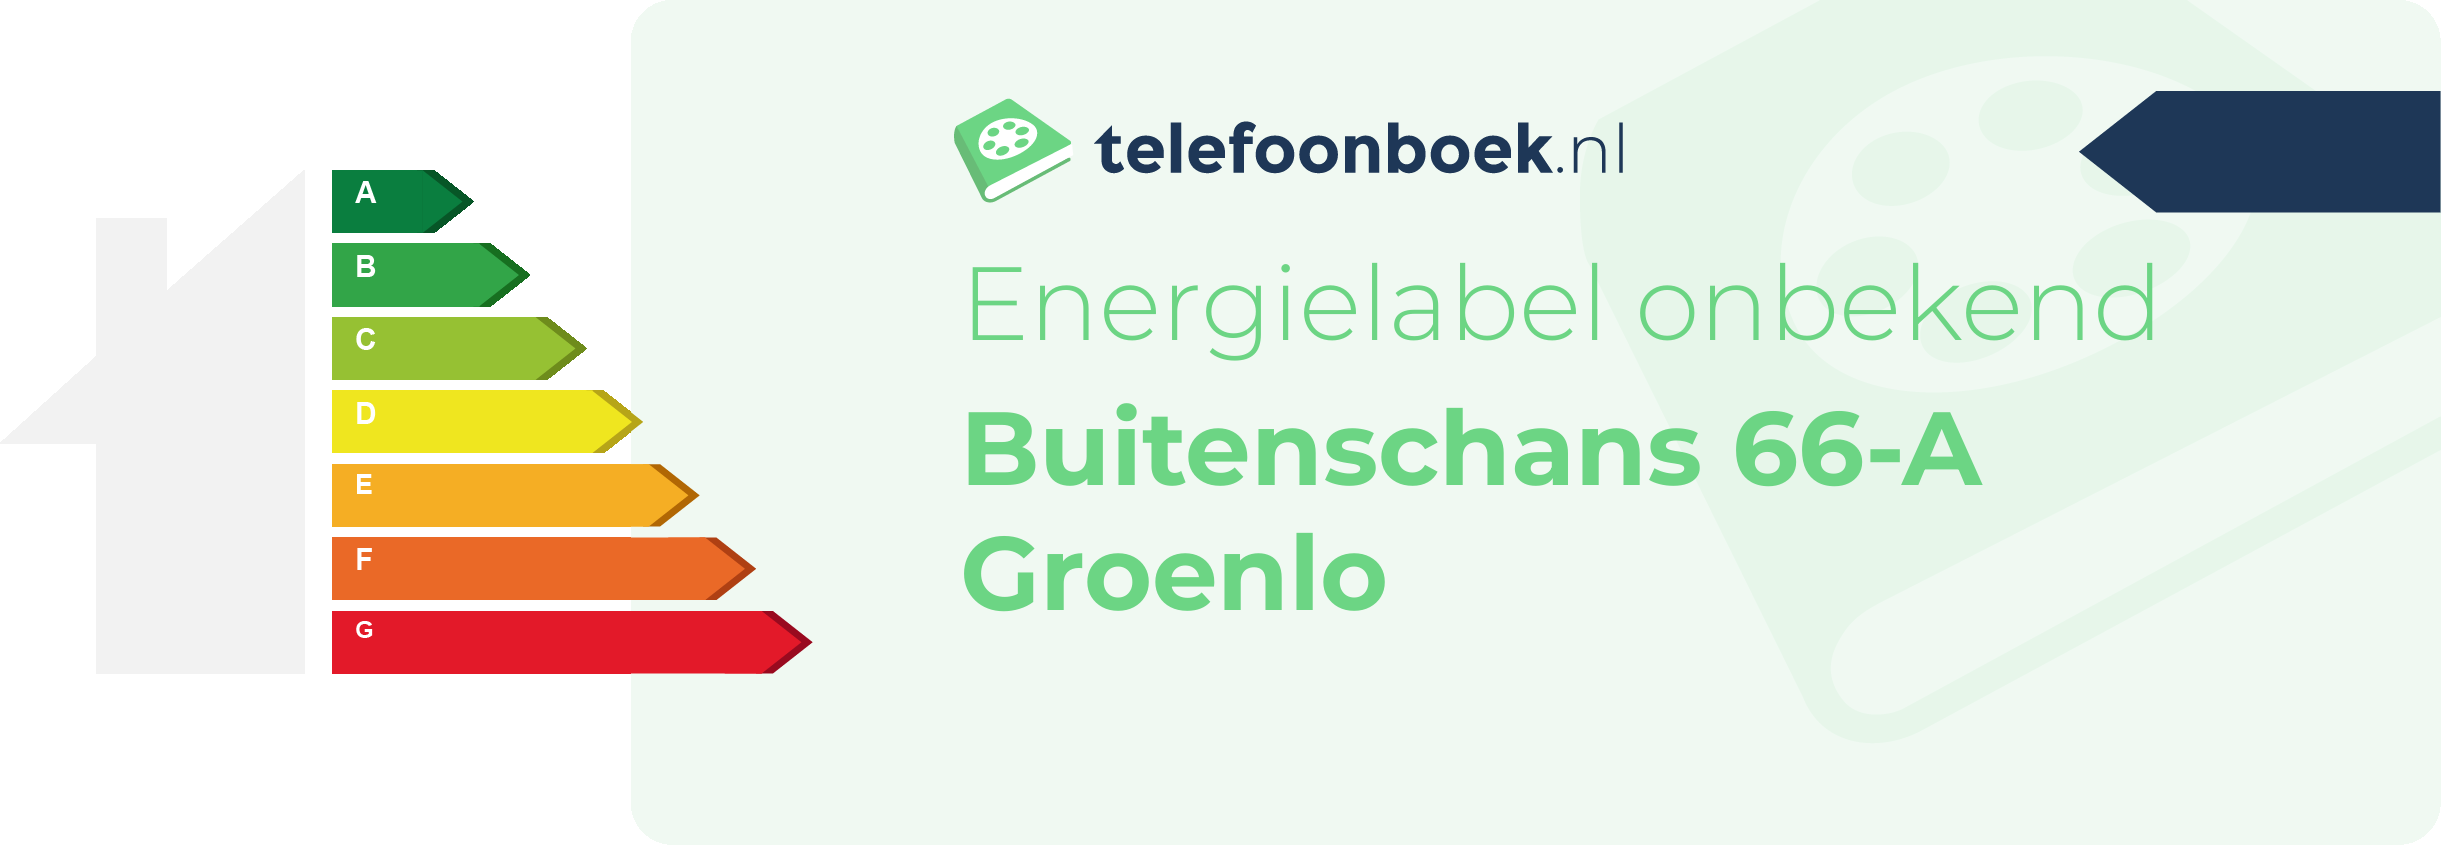 Energielabel Buitenschans 66-A Groenlo